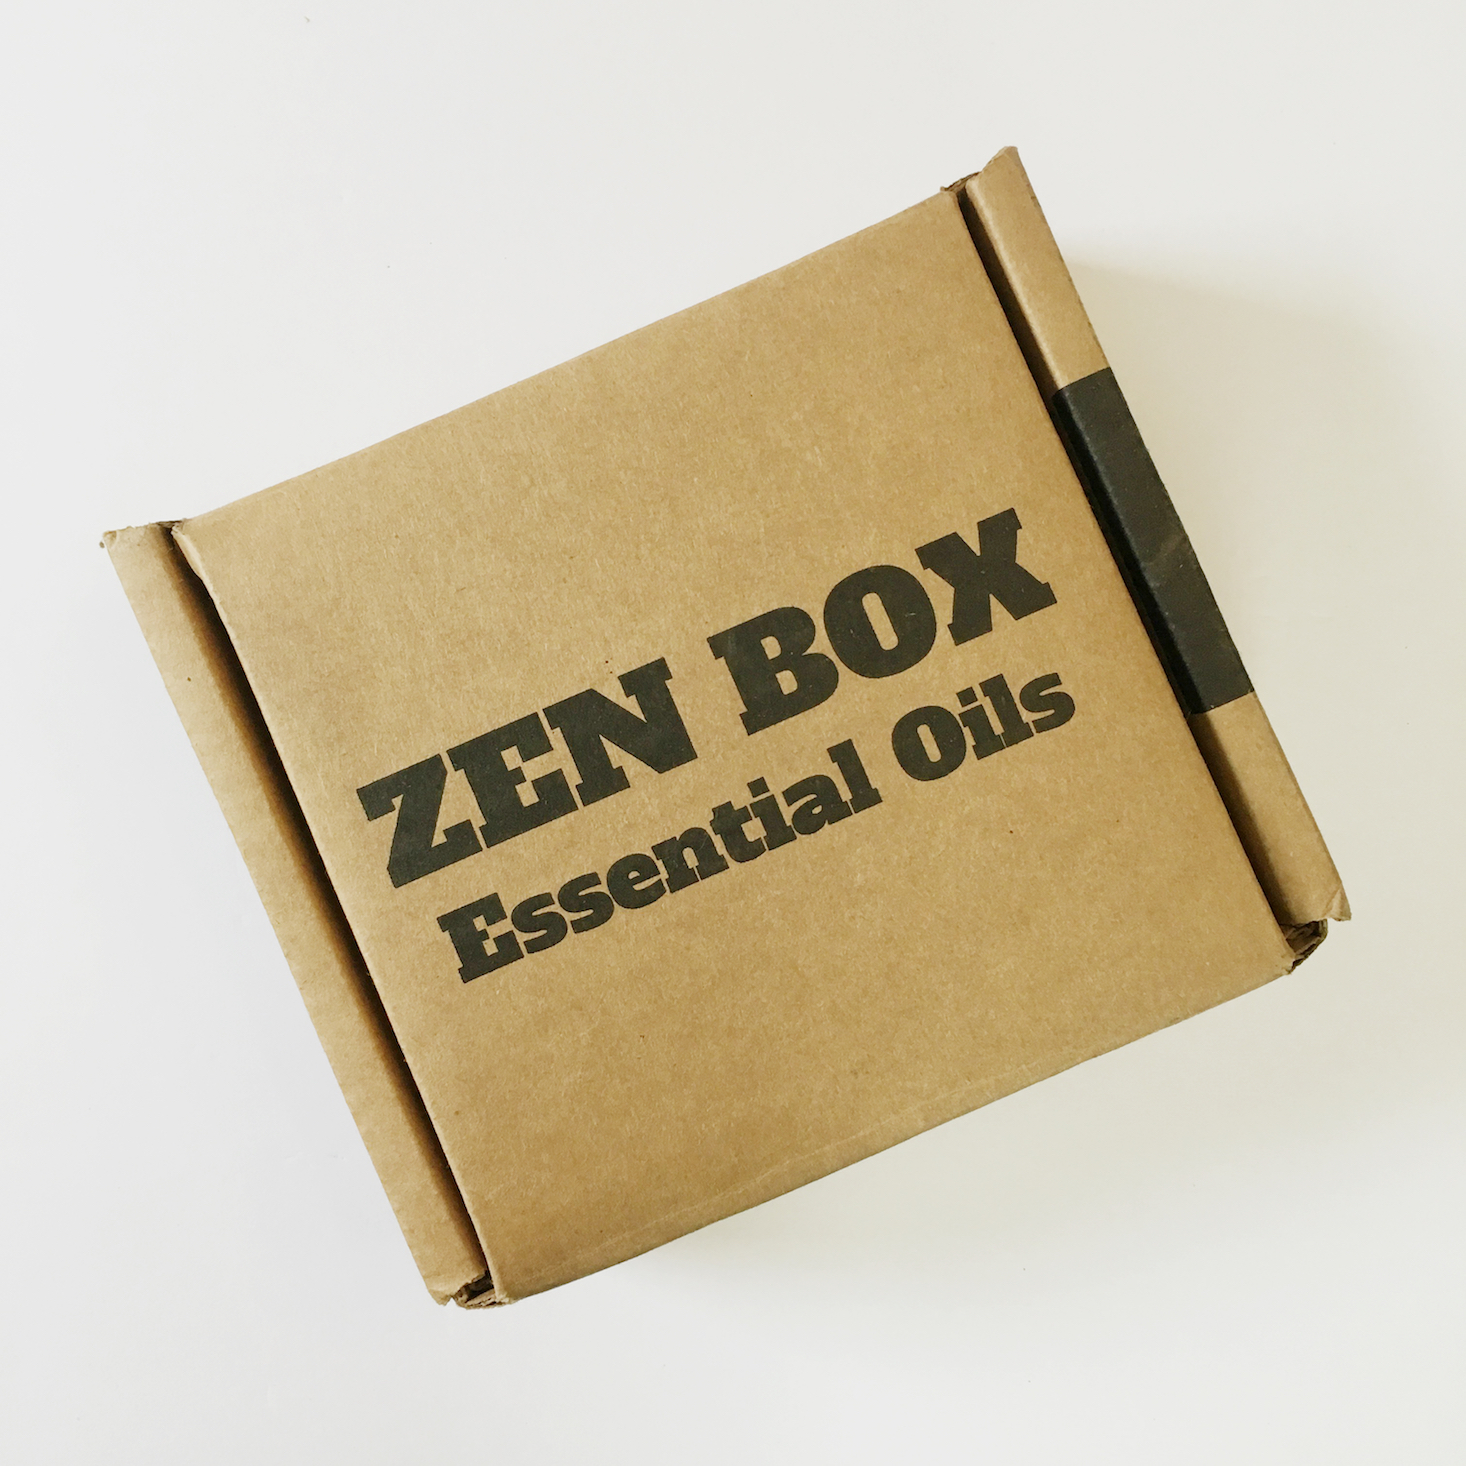 Zen Box October 2017 